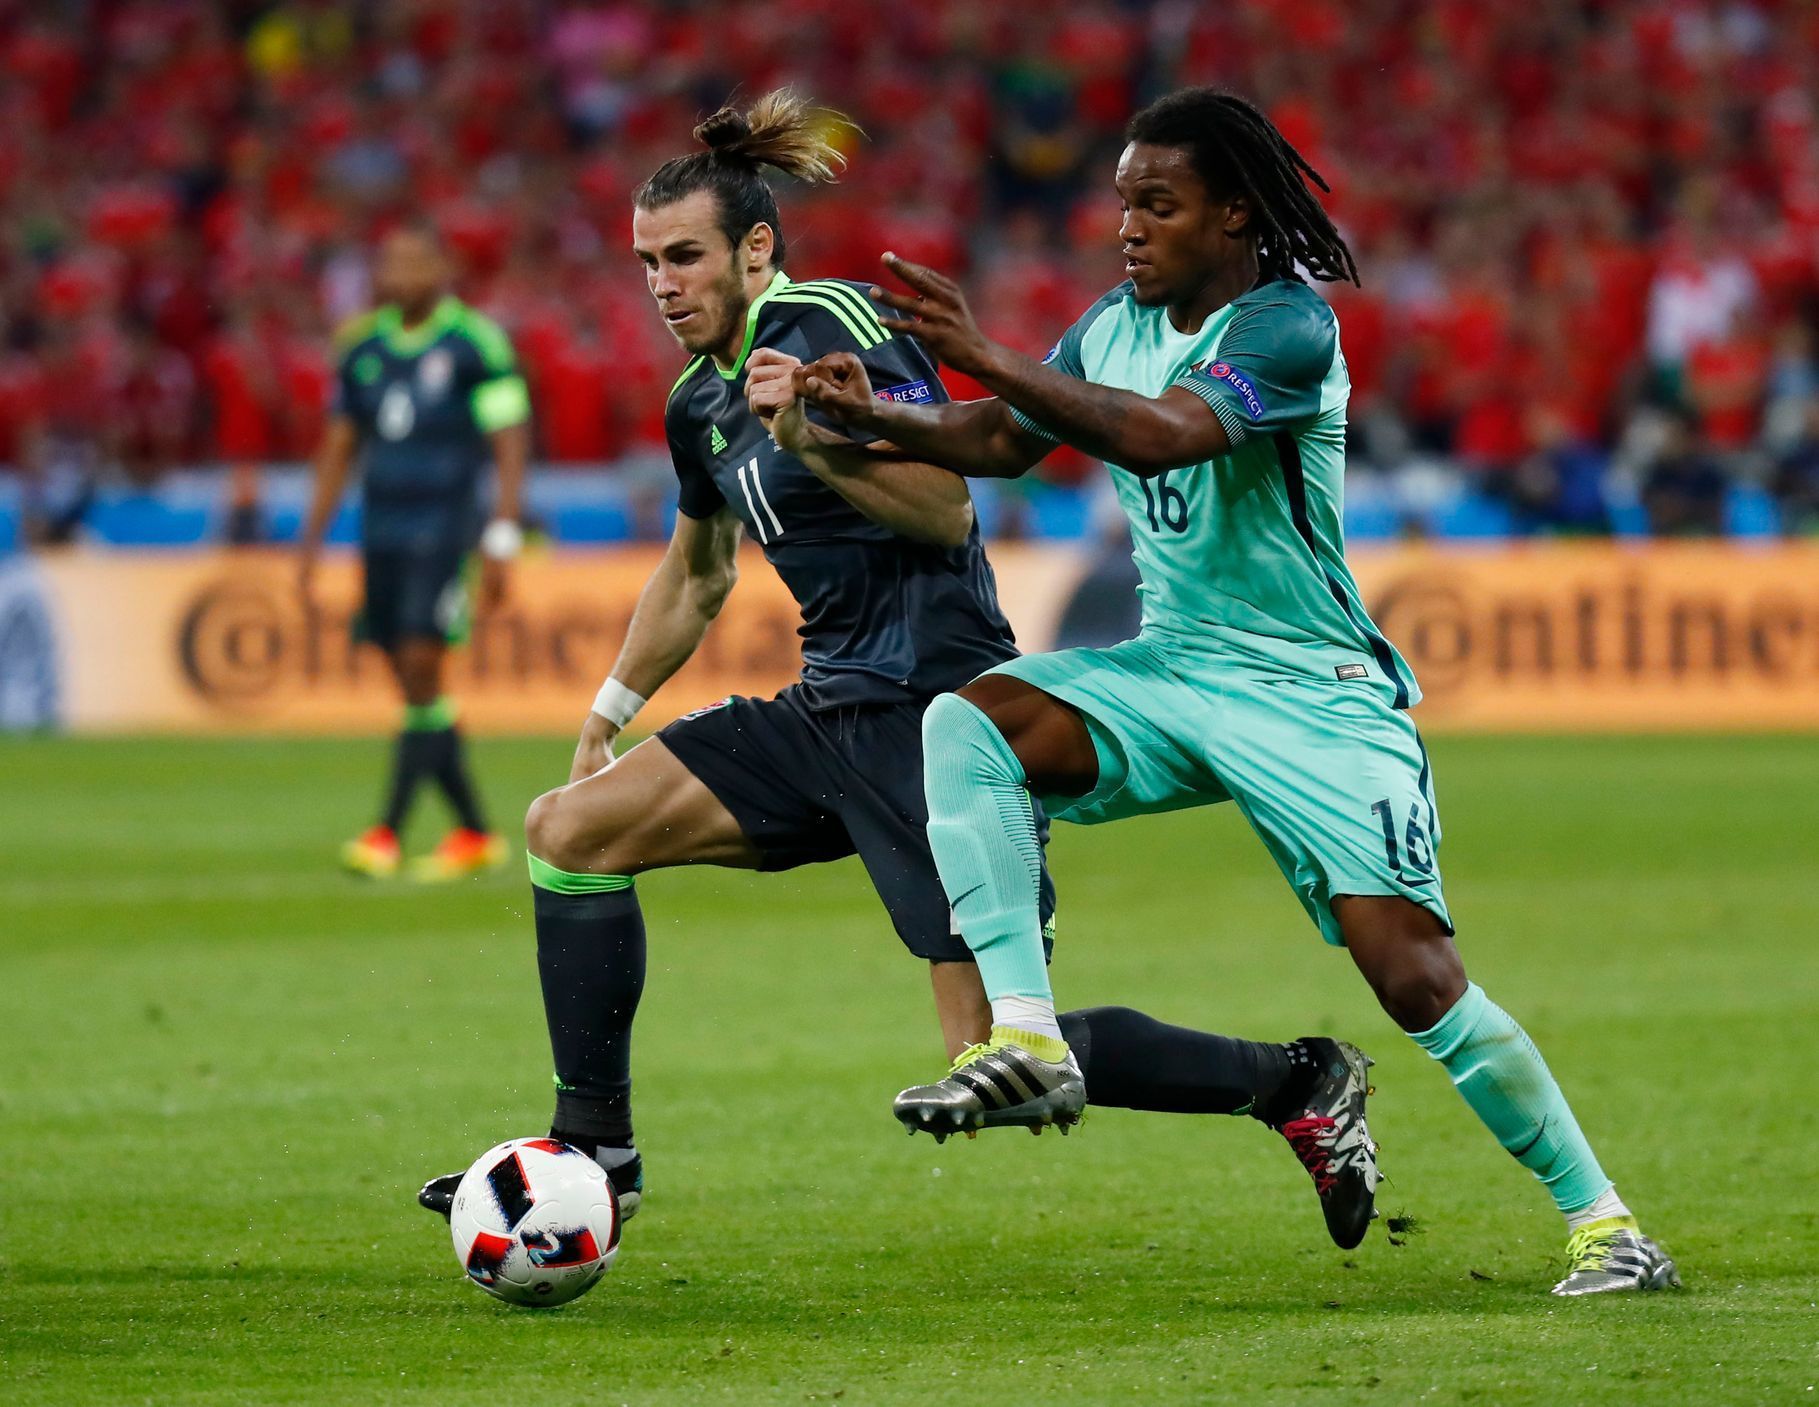 Euro 2016, Portugalsko-Wales: Renato Sanches - Gareth Bale